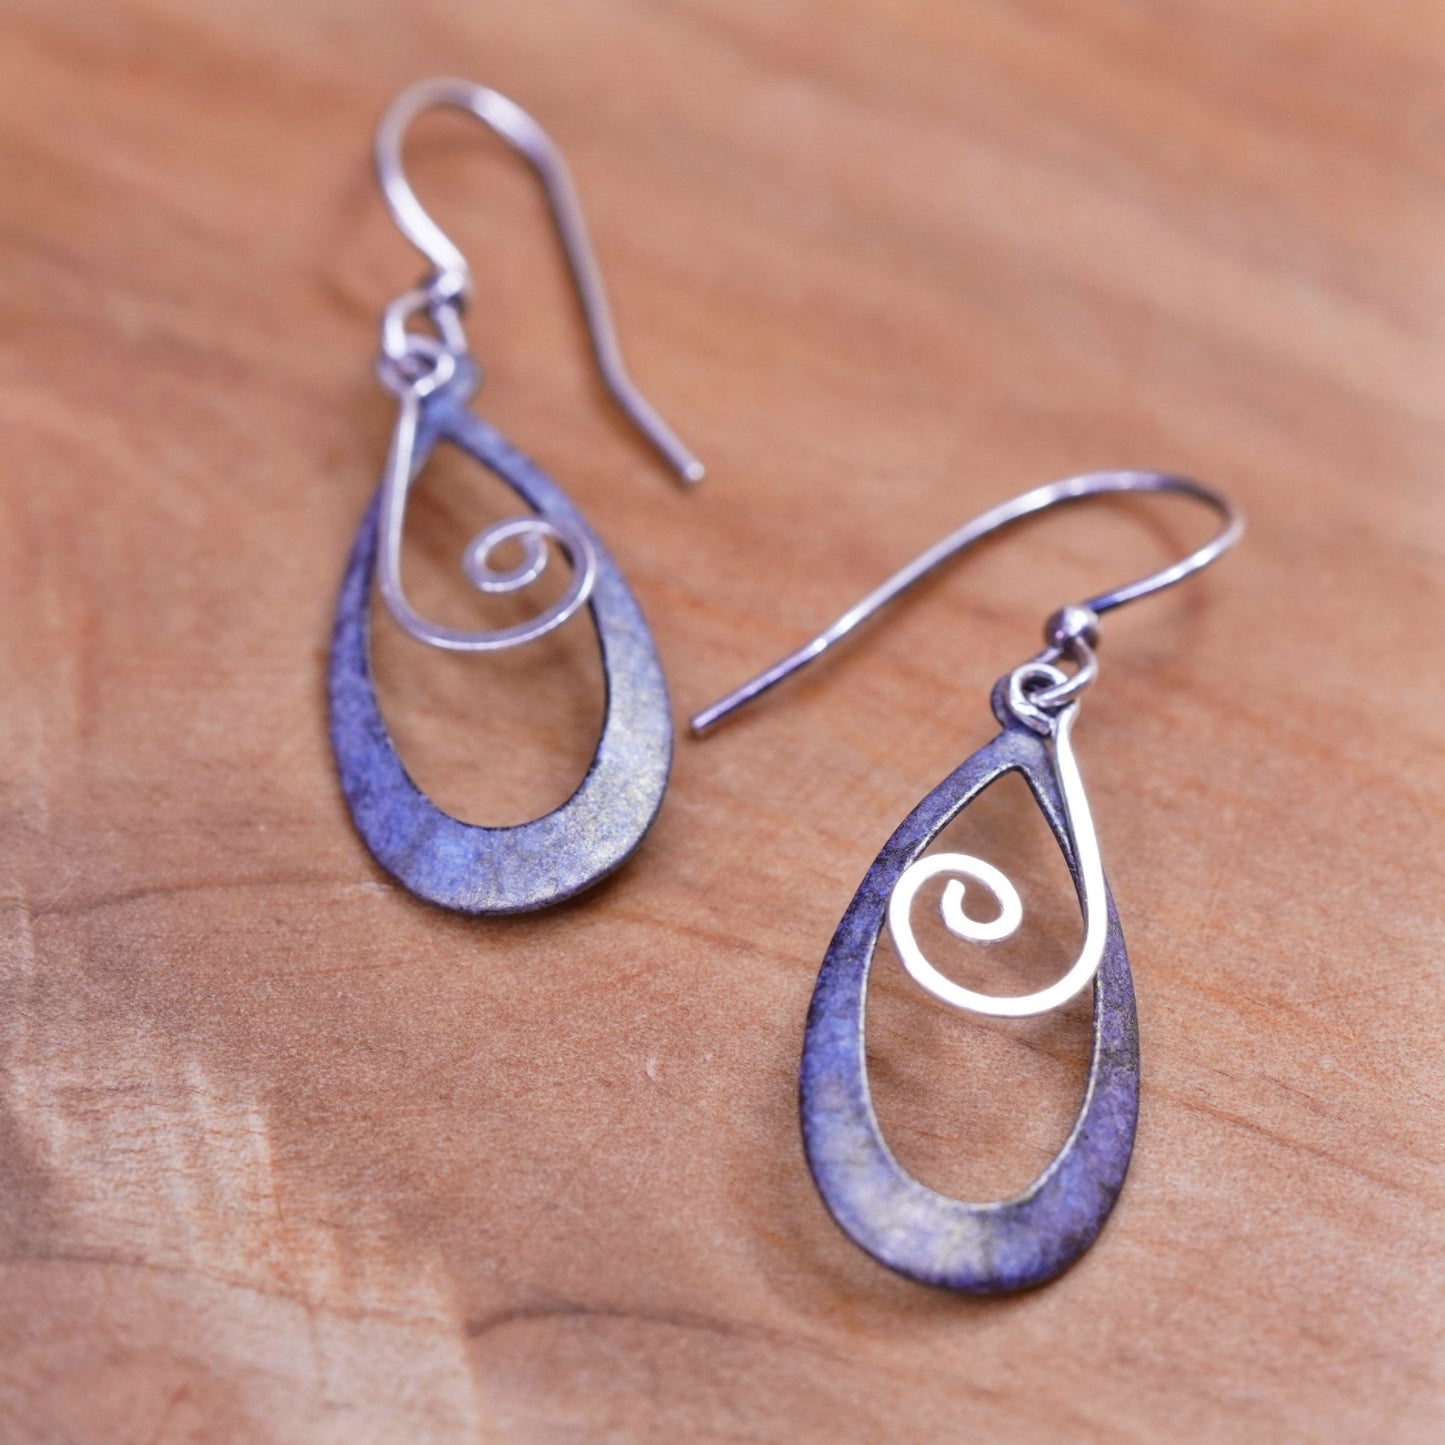 Vintage Sterling silver handmade earrings, 925 teardrops with swirly dangle